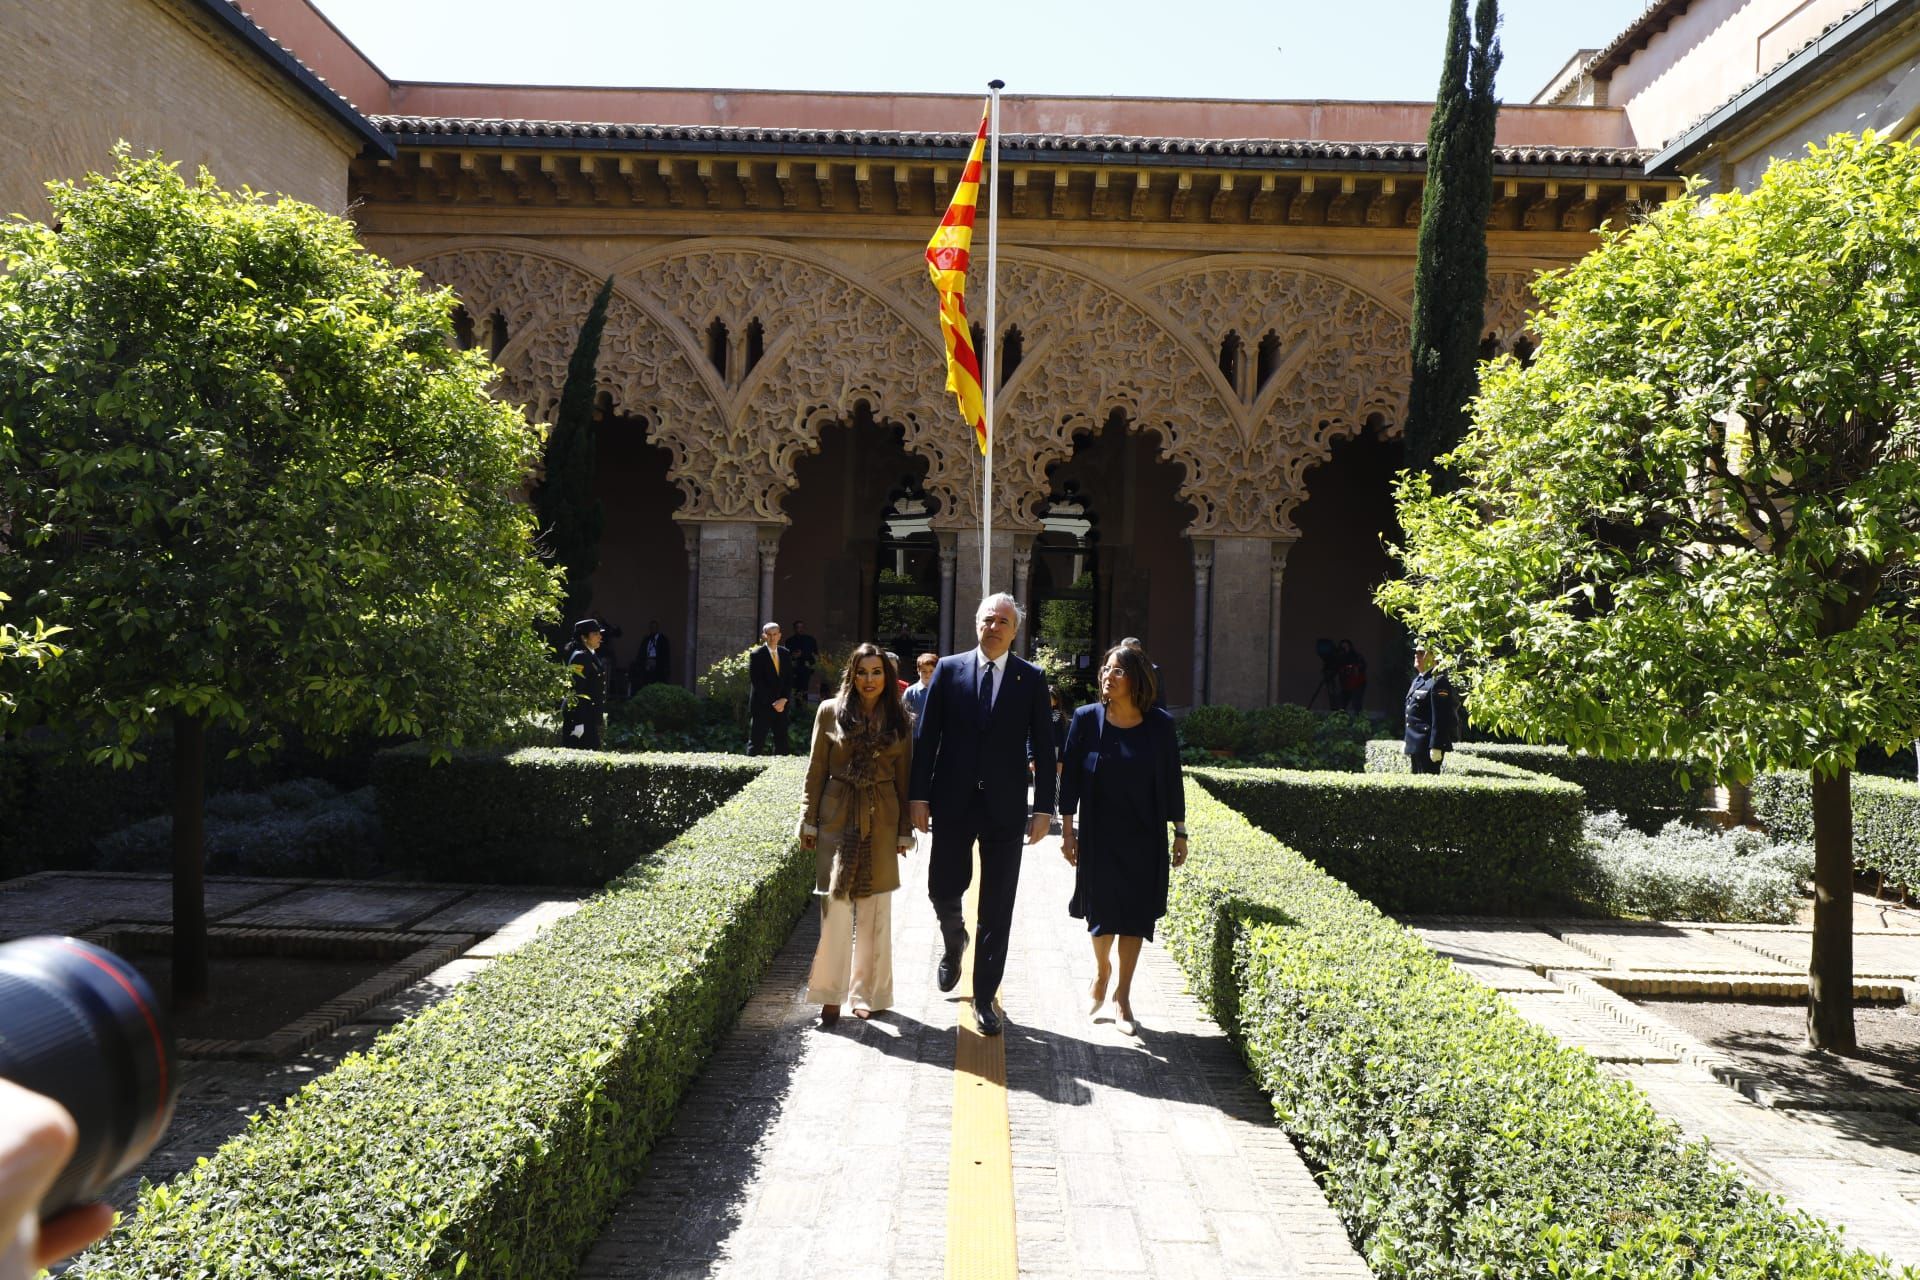 EN IMÁGENES | Acto institucional del Día de Aragón 2024 en La Aljafería